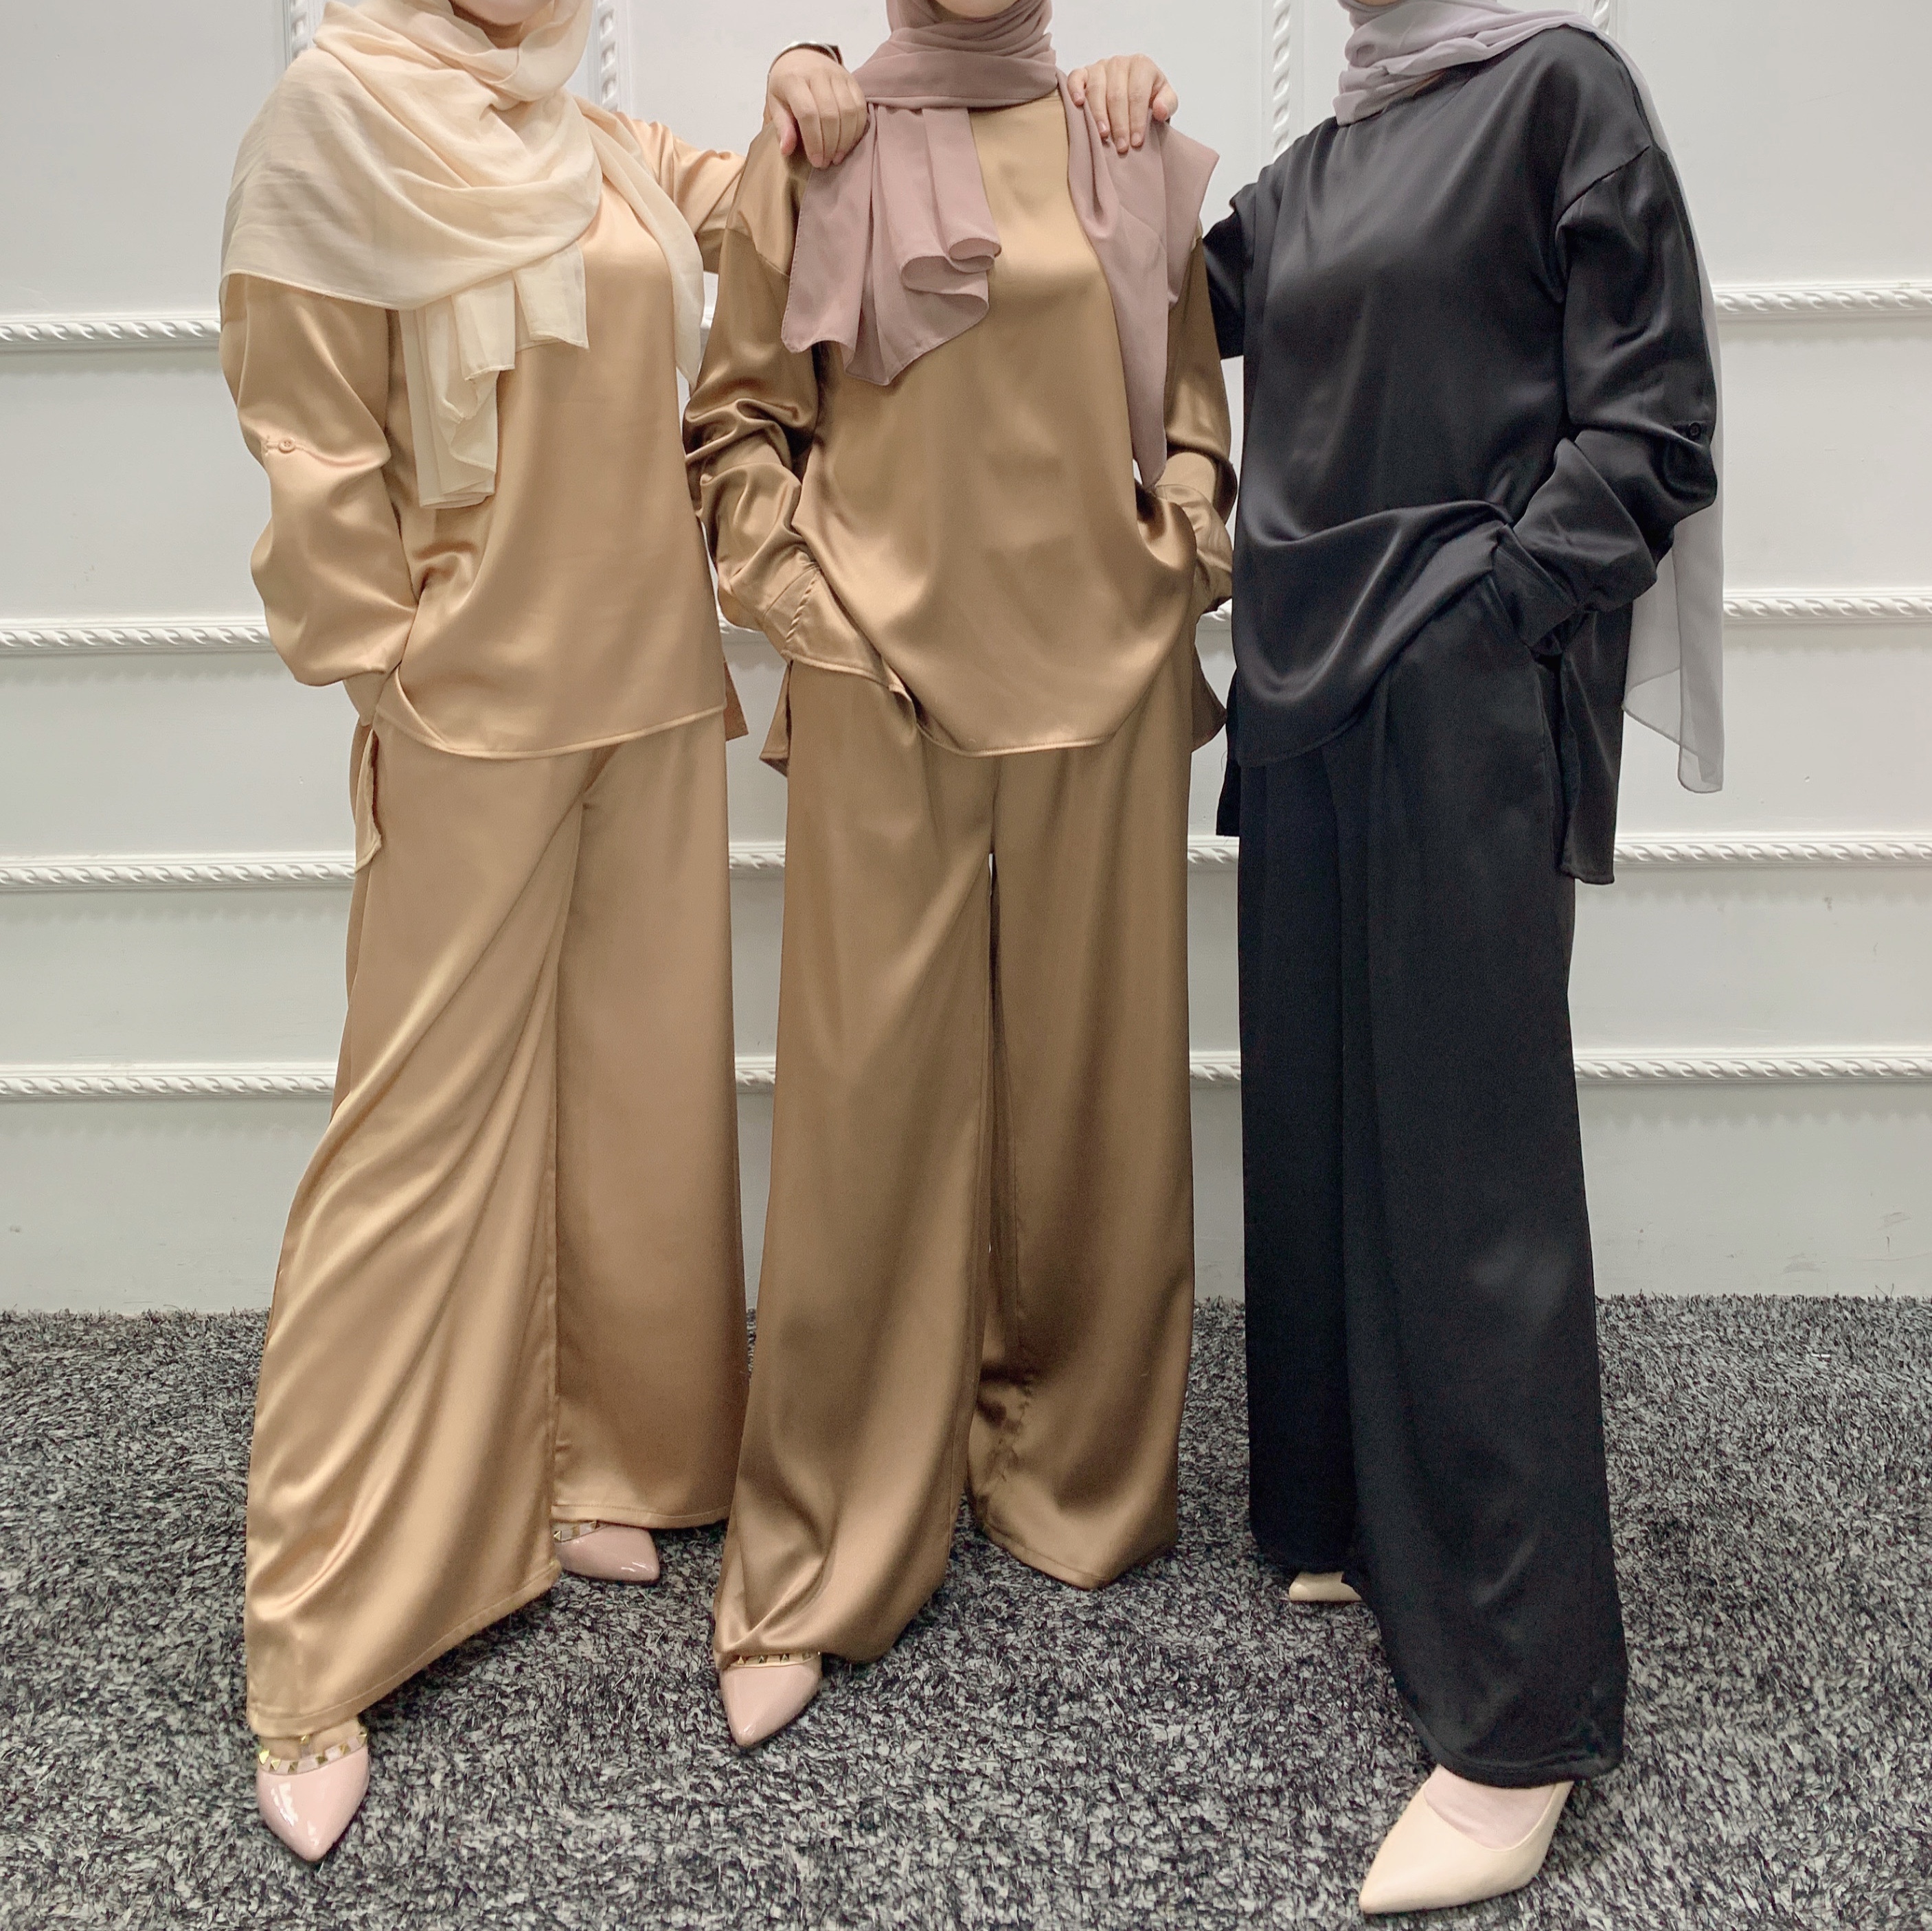 LR363 EID Abaya Dubai Turkey Solid Color Simple Modest Islamic Clothing Muslim women dress Abaya